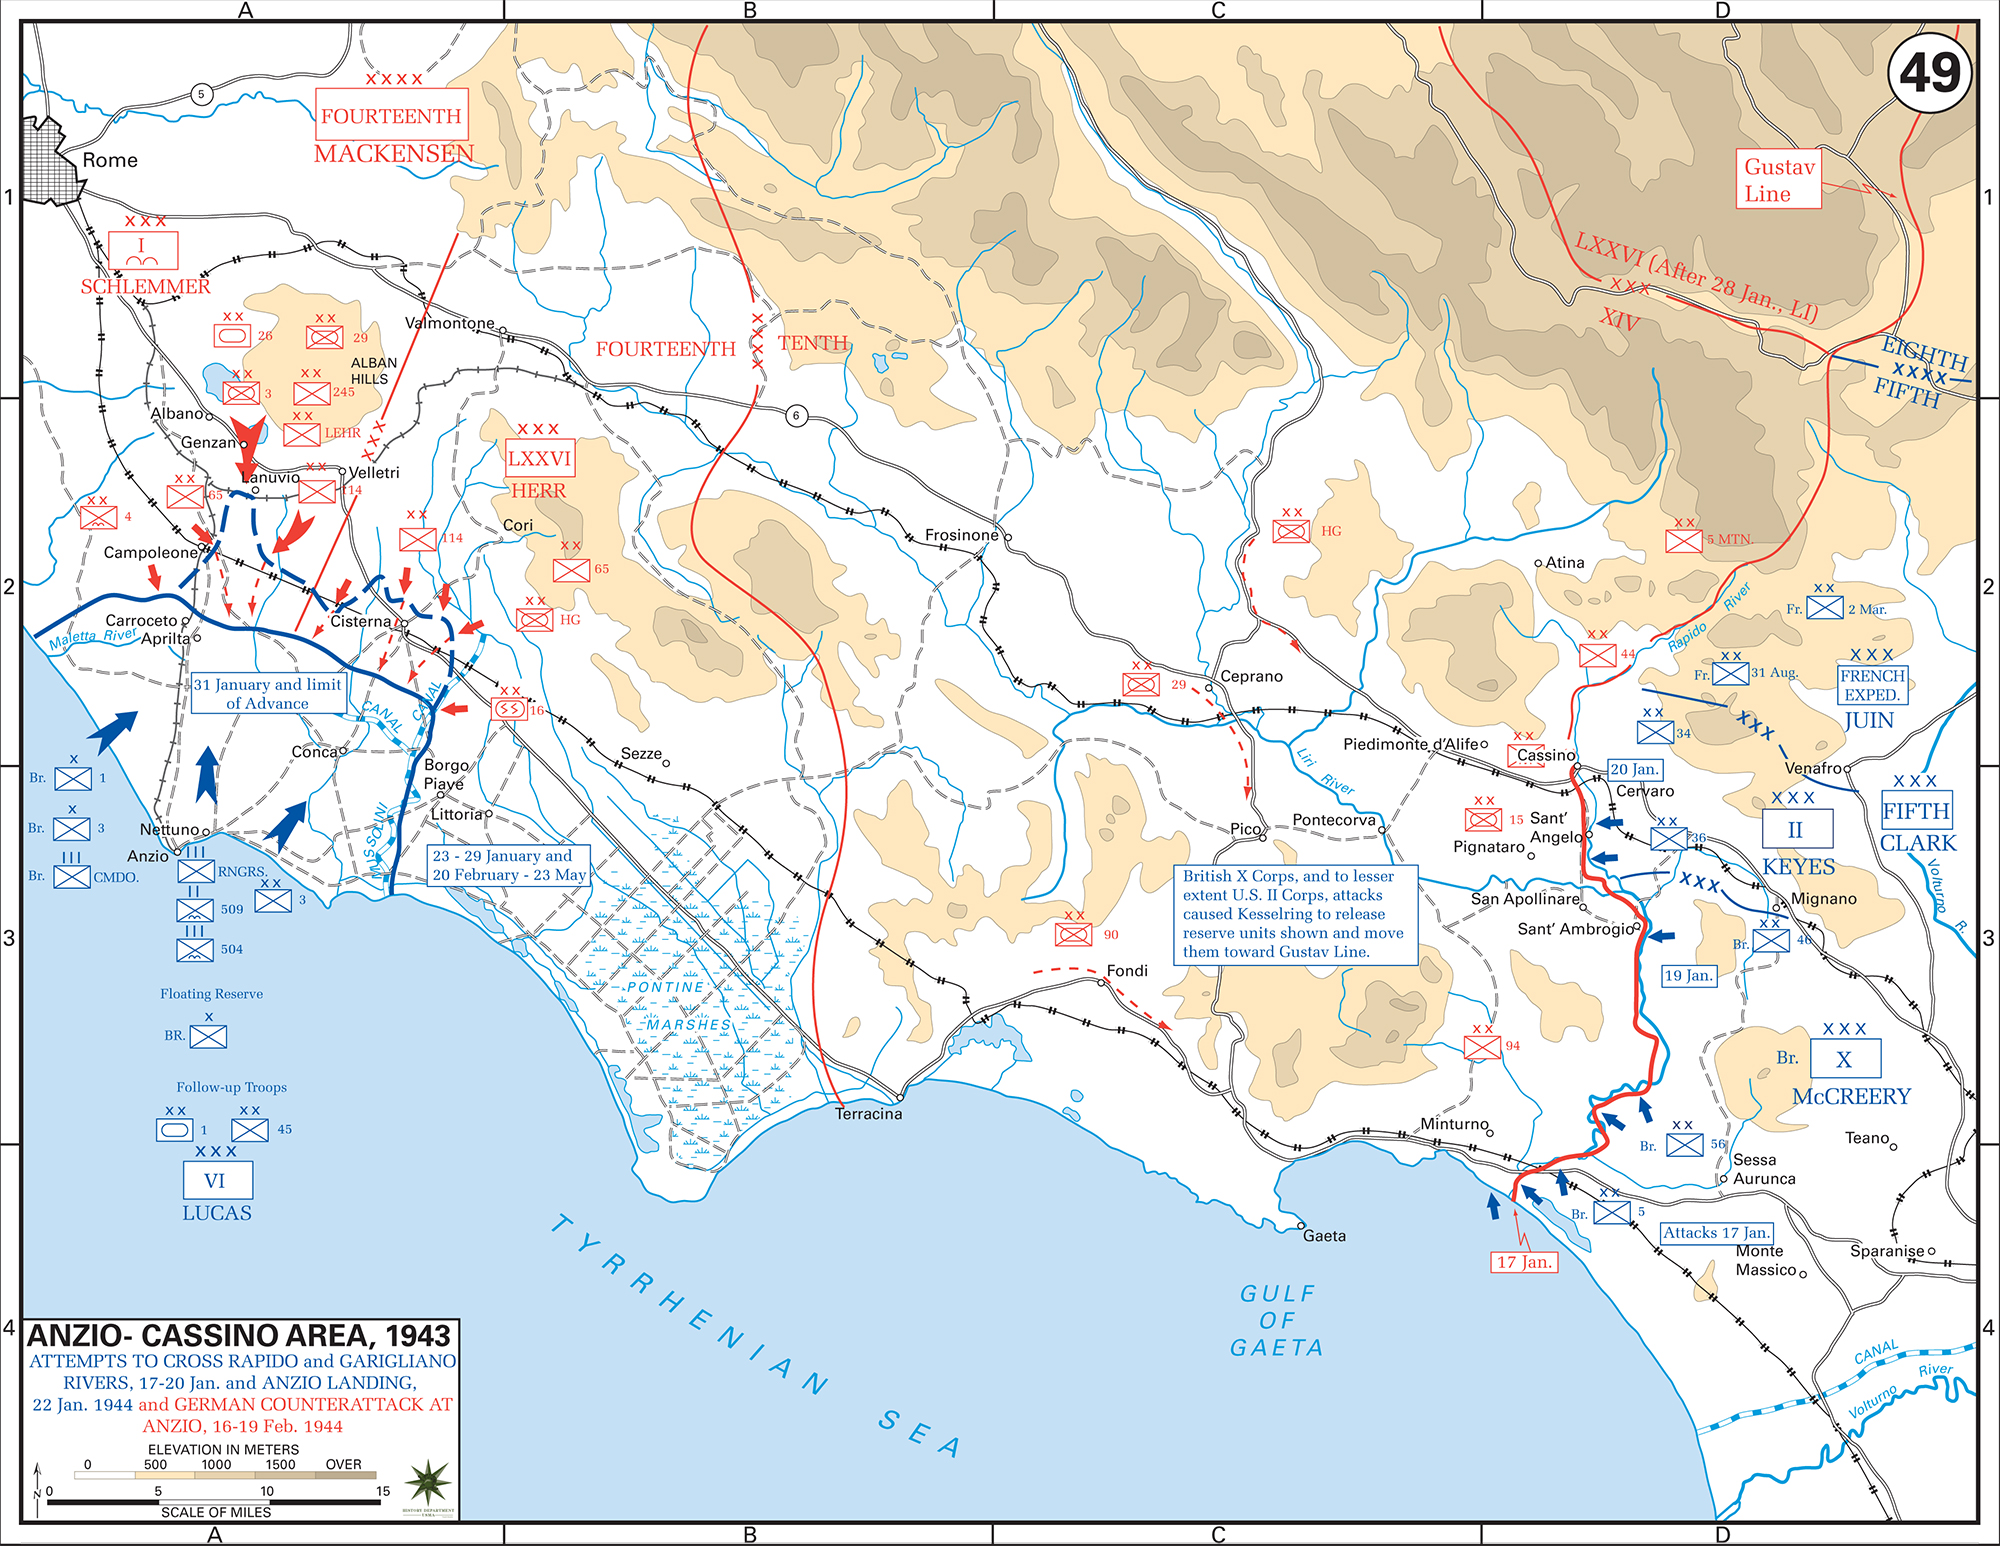 Map of WWII Italy, Anzio-Cassino Region, January 17 - February 19, 1944